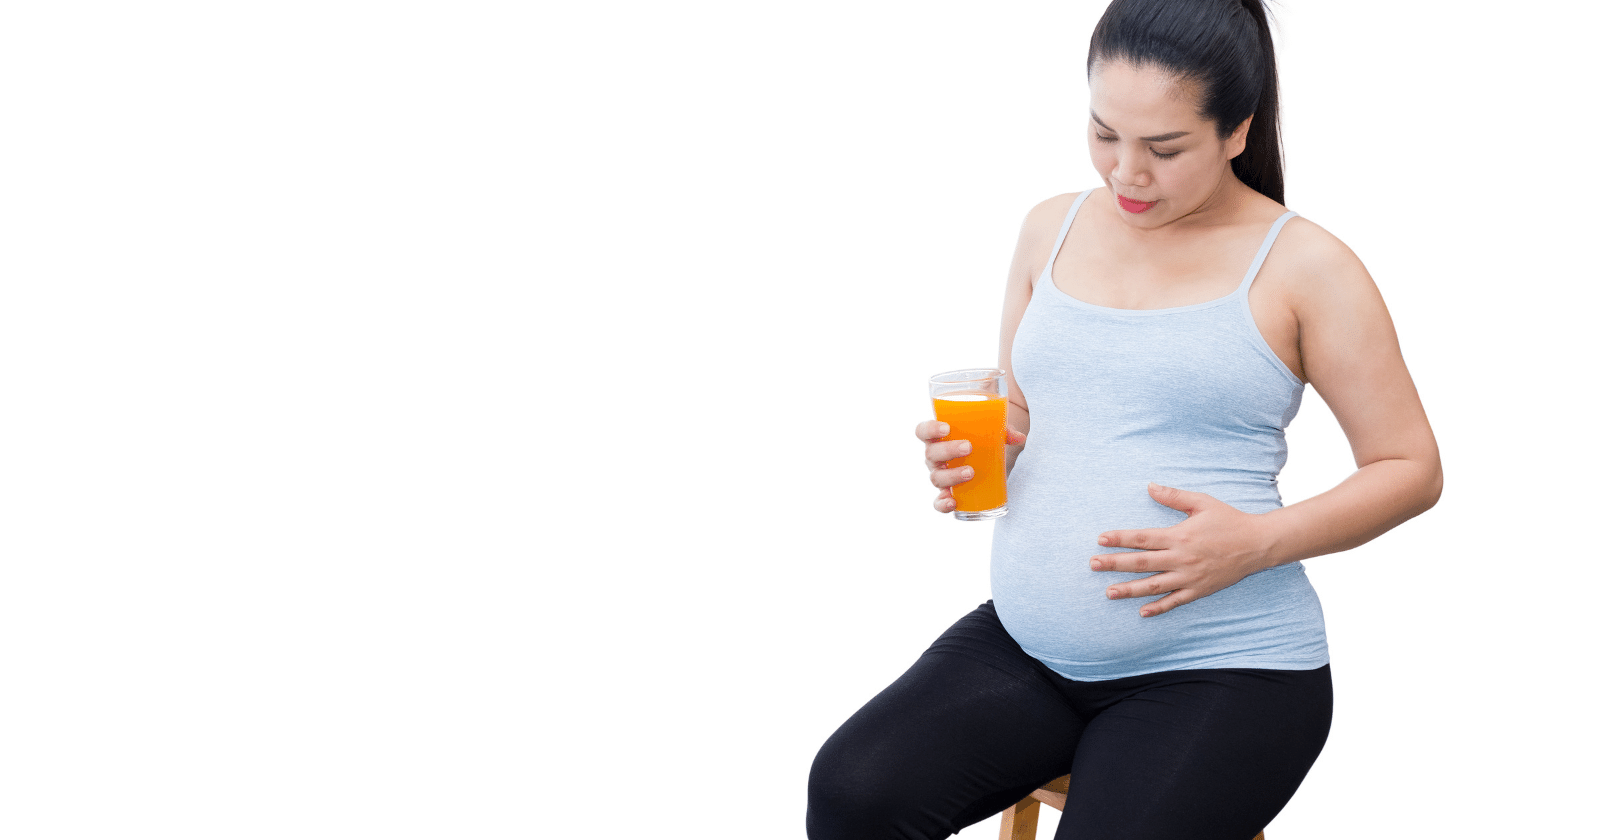 hamilelik boyunca portakal suyu i̇çmek önerilir mi?